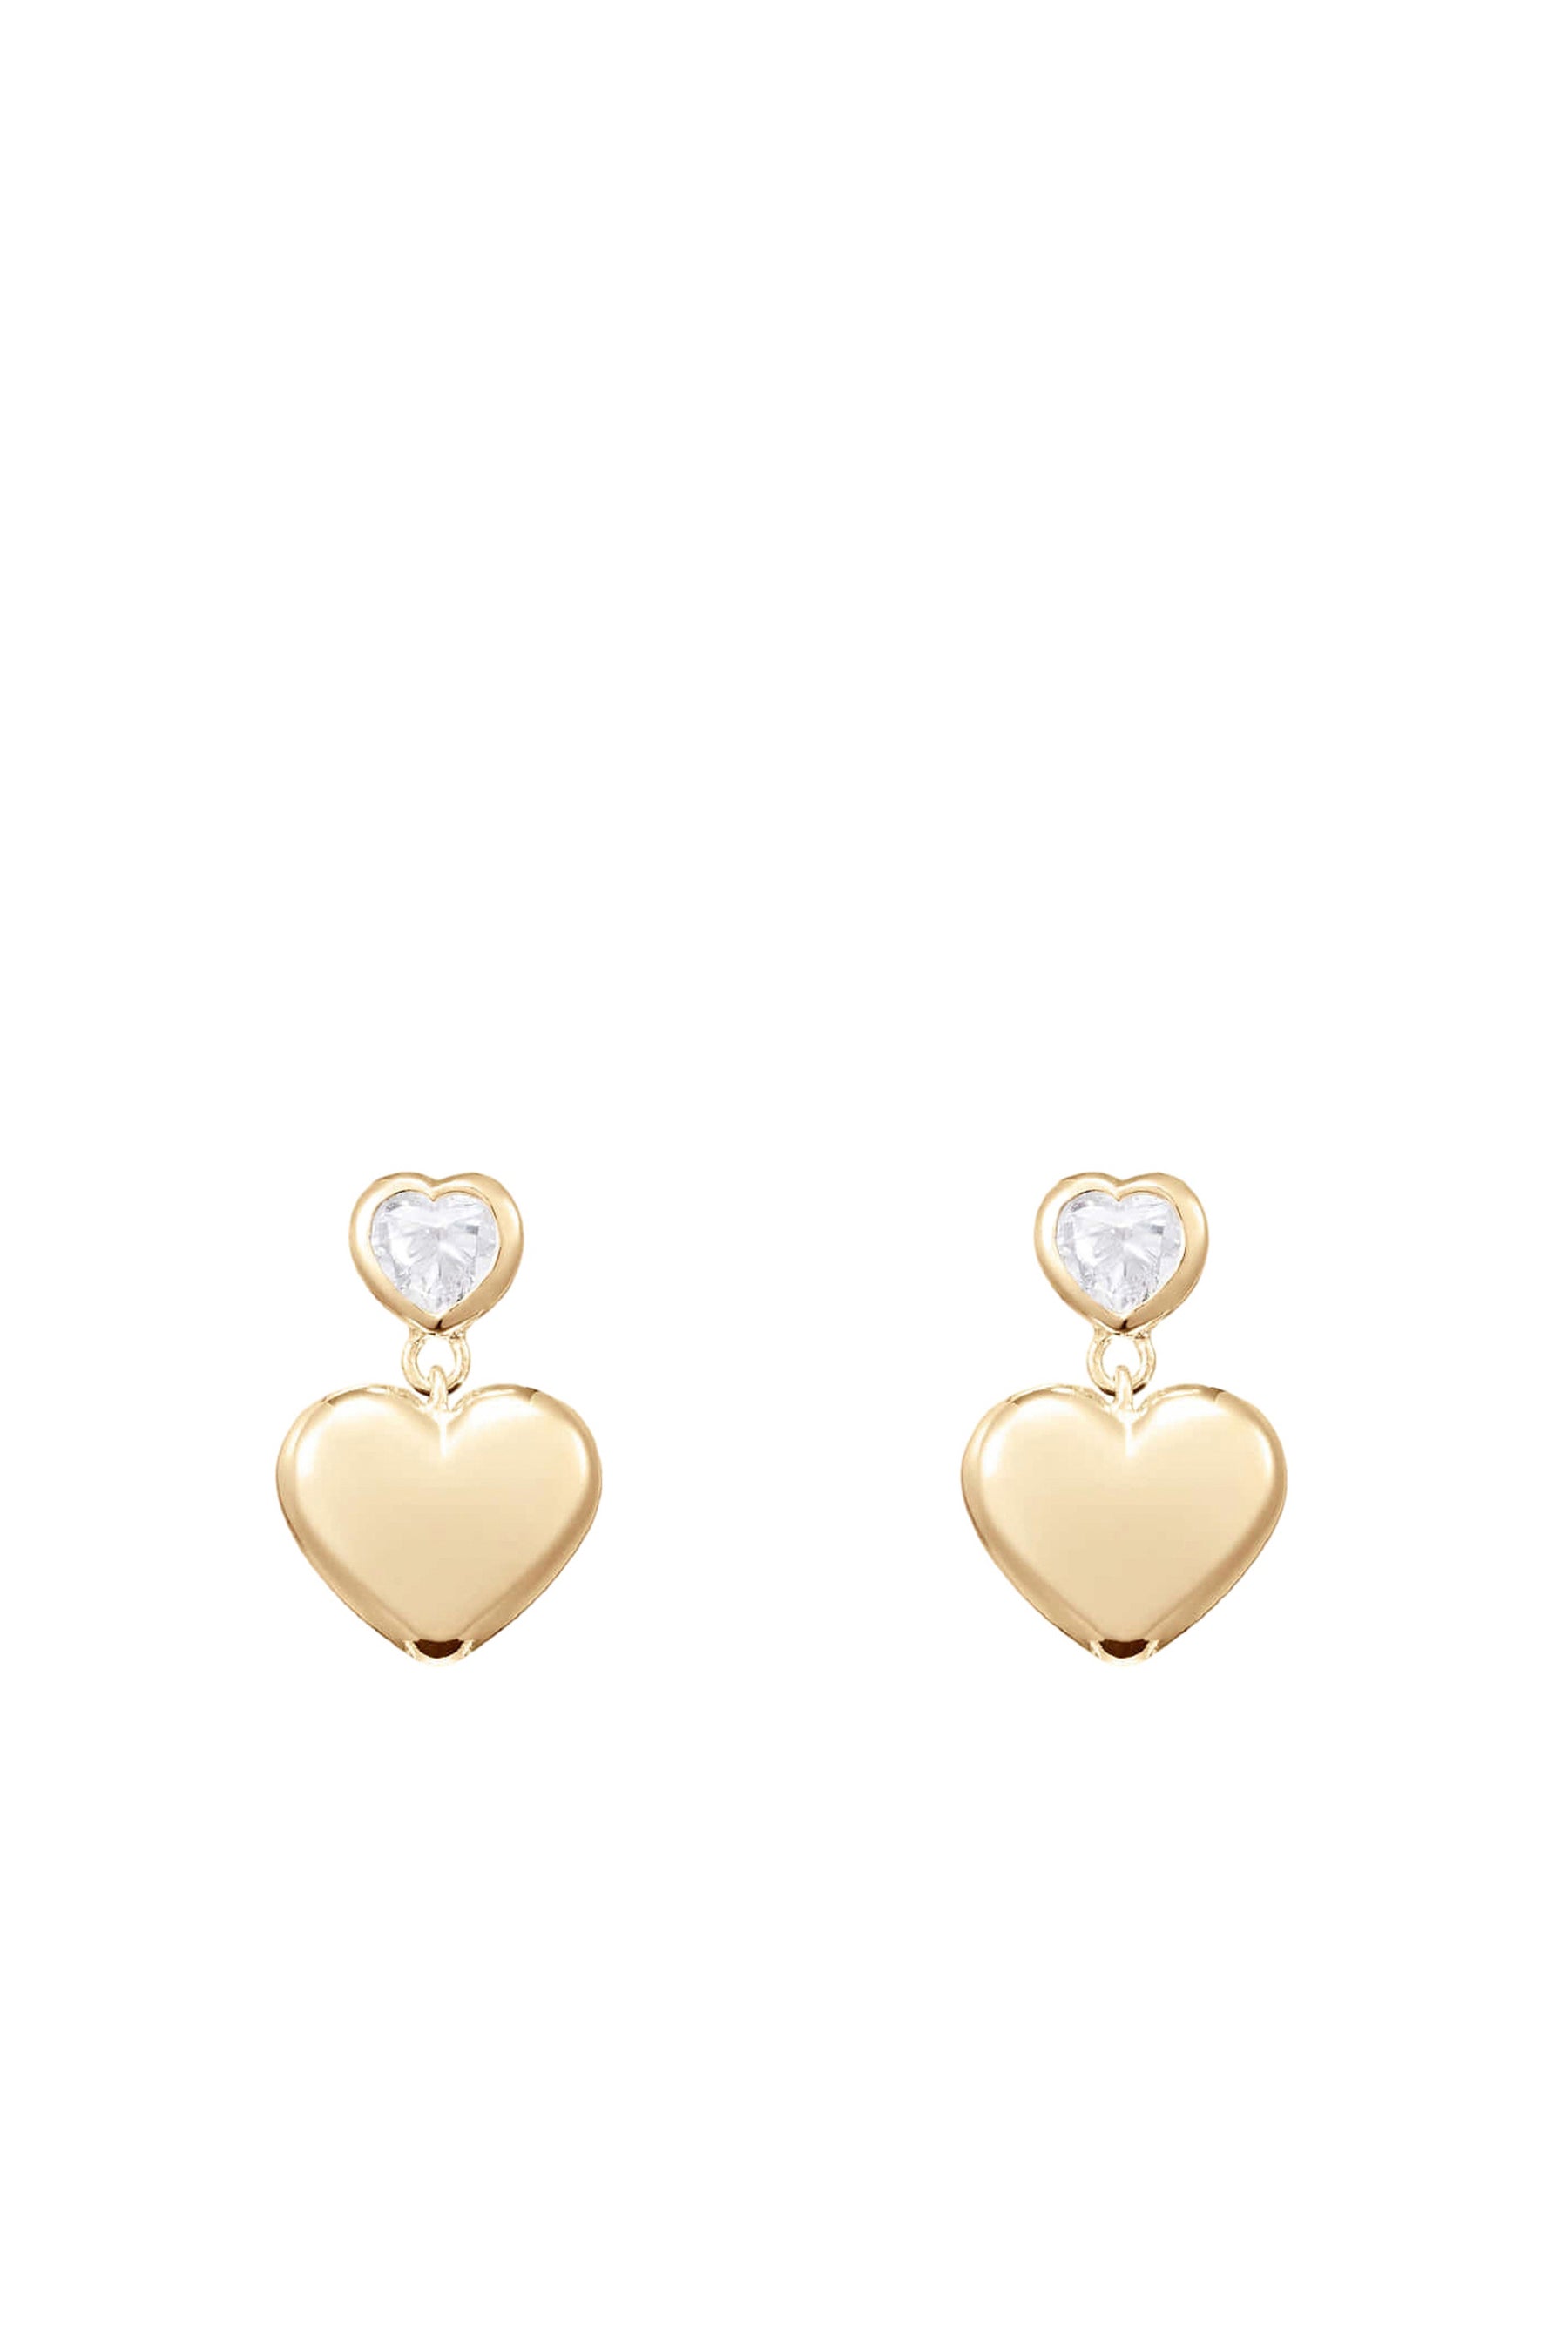 DOUBLE HEART DANGLED EARRINGS / GOLD